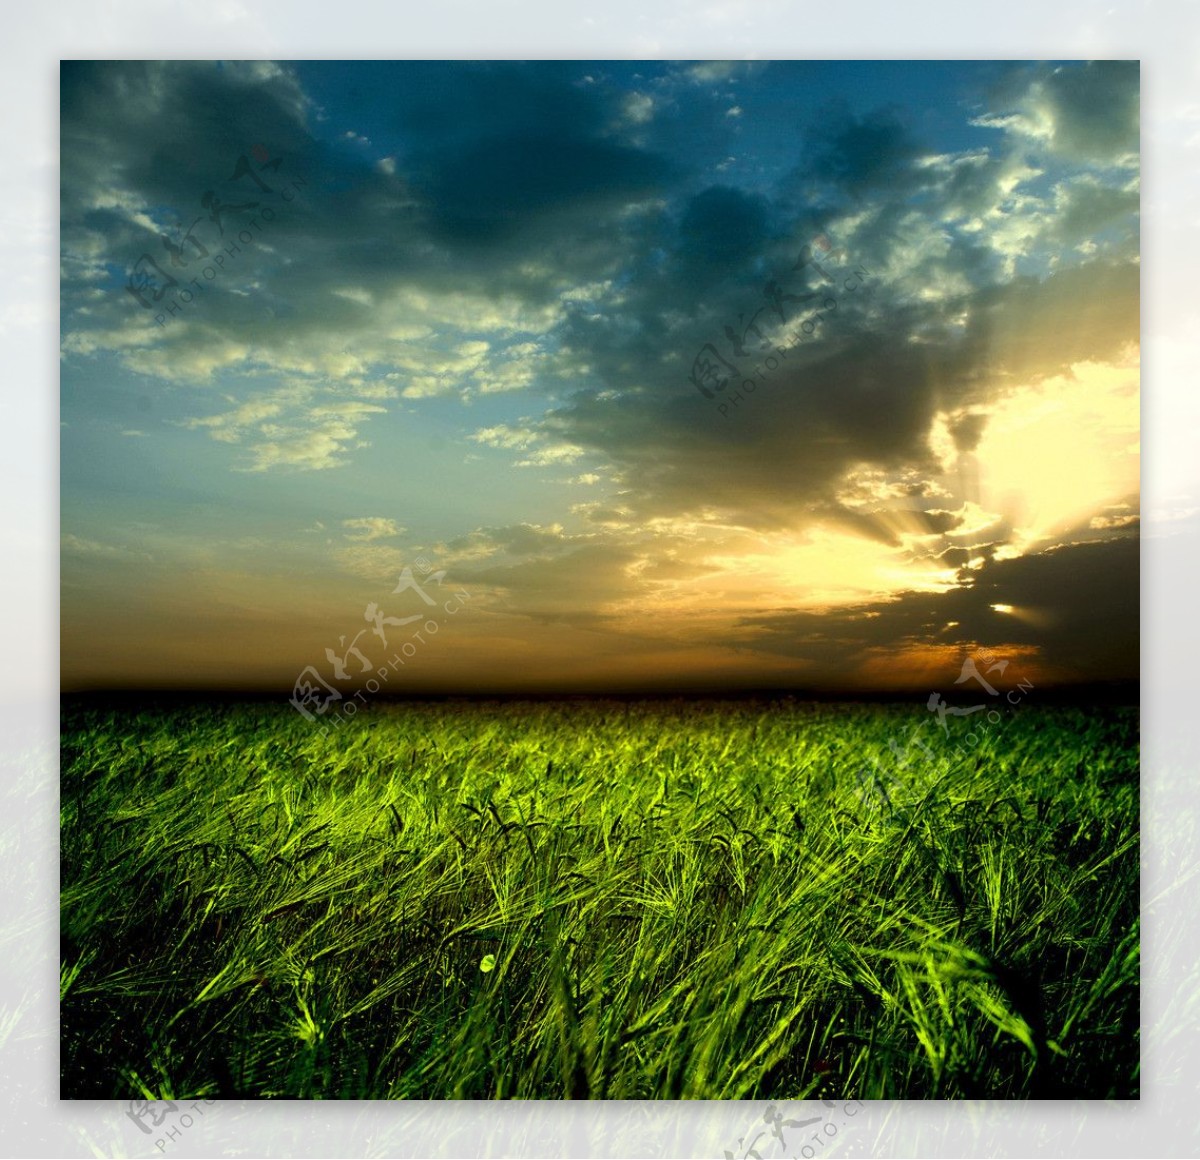 夕阳晚霞下的麦地麦田图片